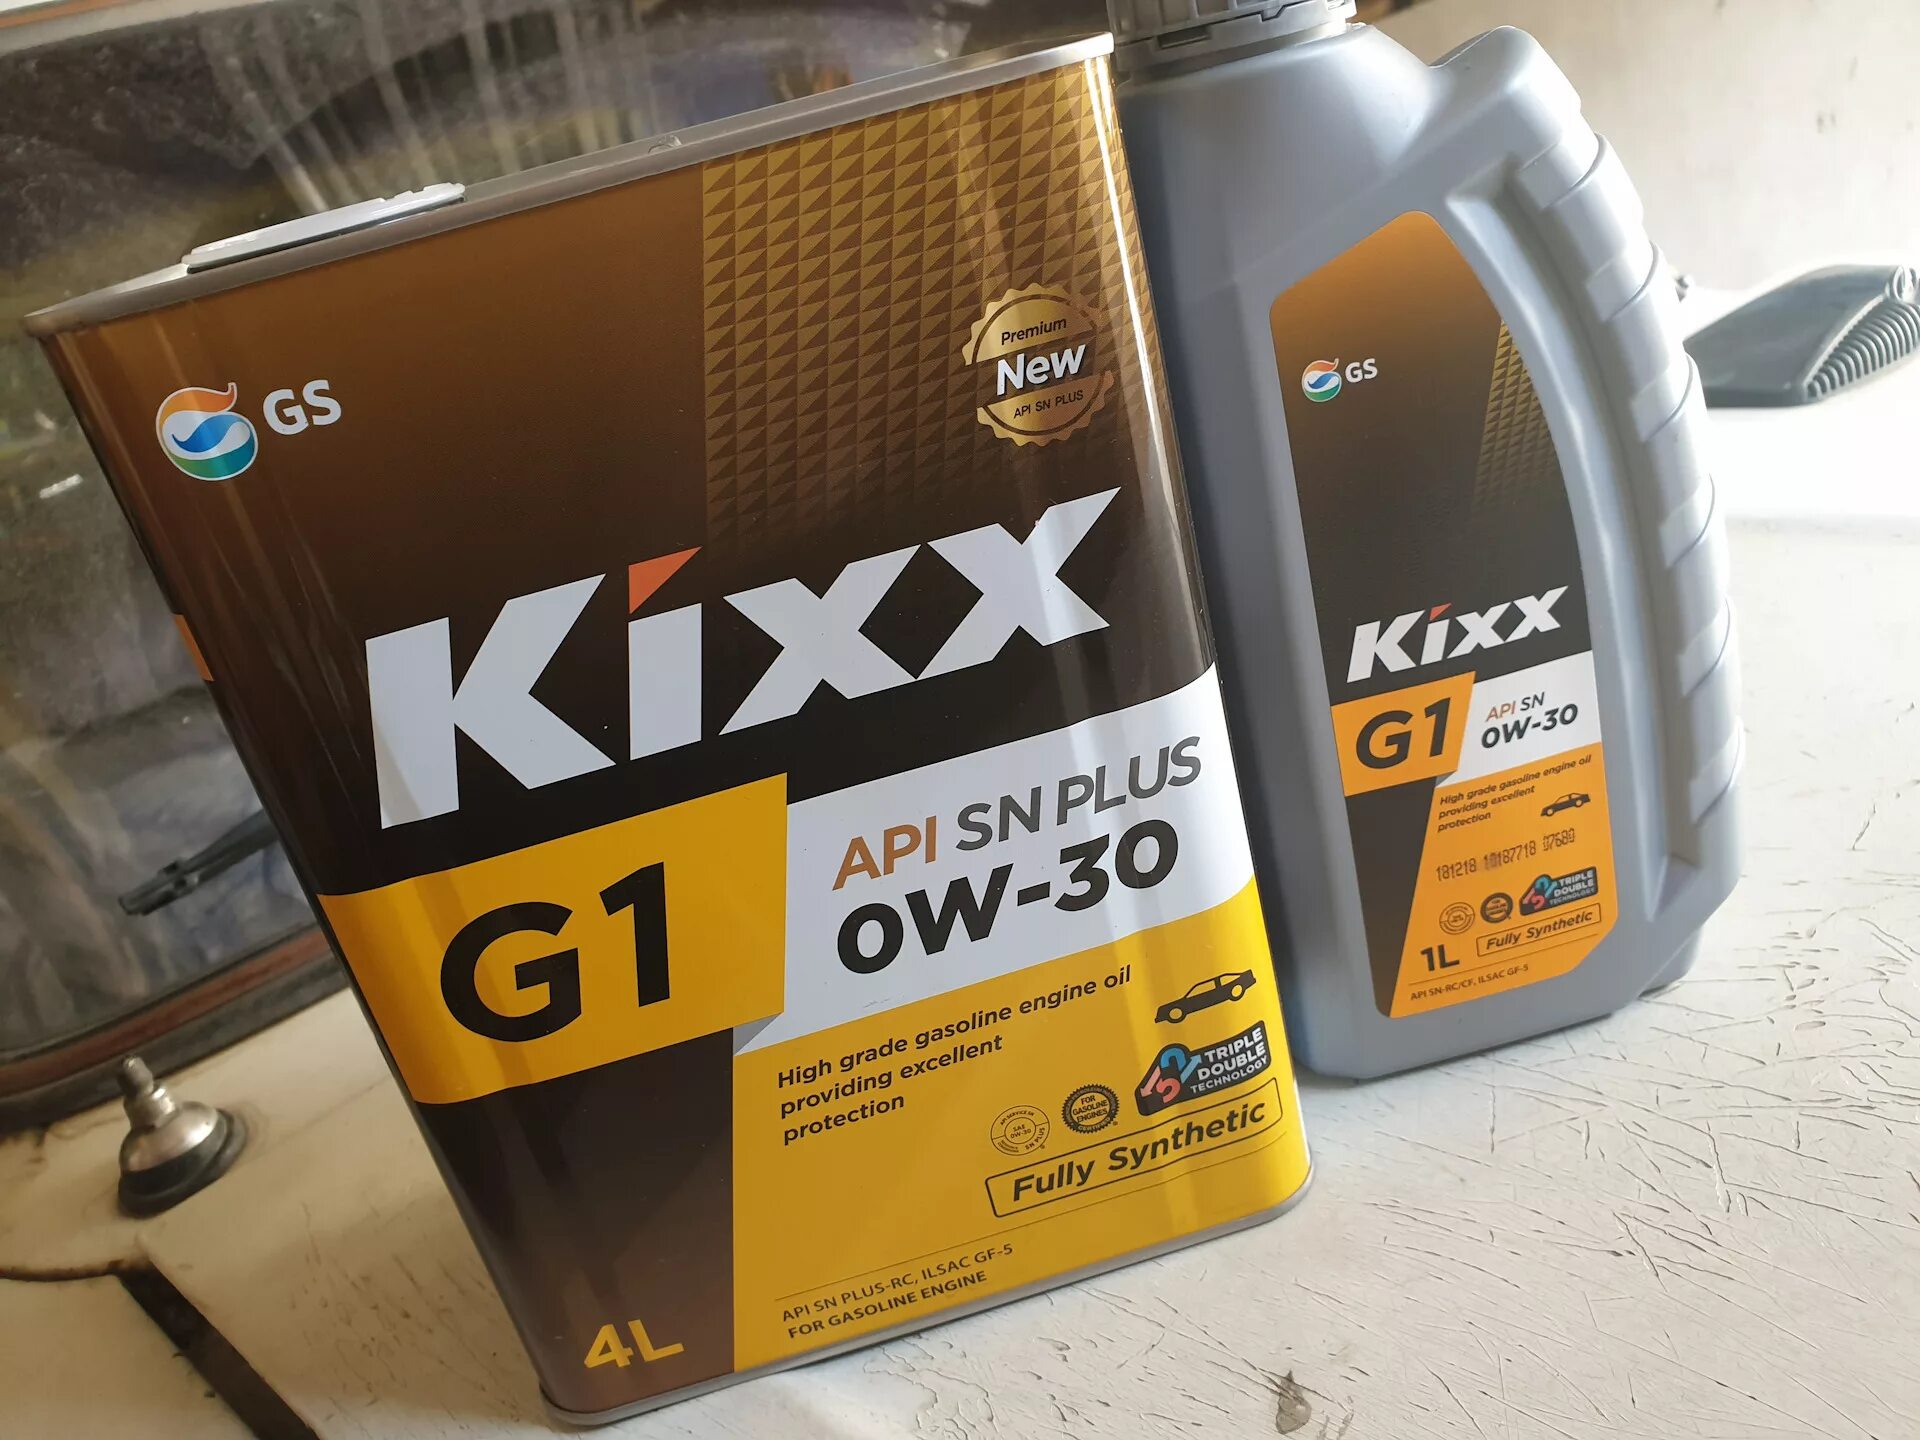 Kixx pao 1. Kixx 0w30. Kixx g1 SN 0w-30. Kixx 5w40. Kixx g1 SN Plus 5w-40.